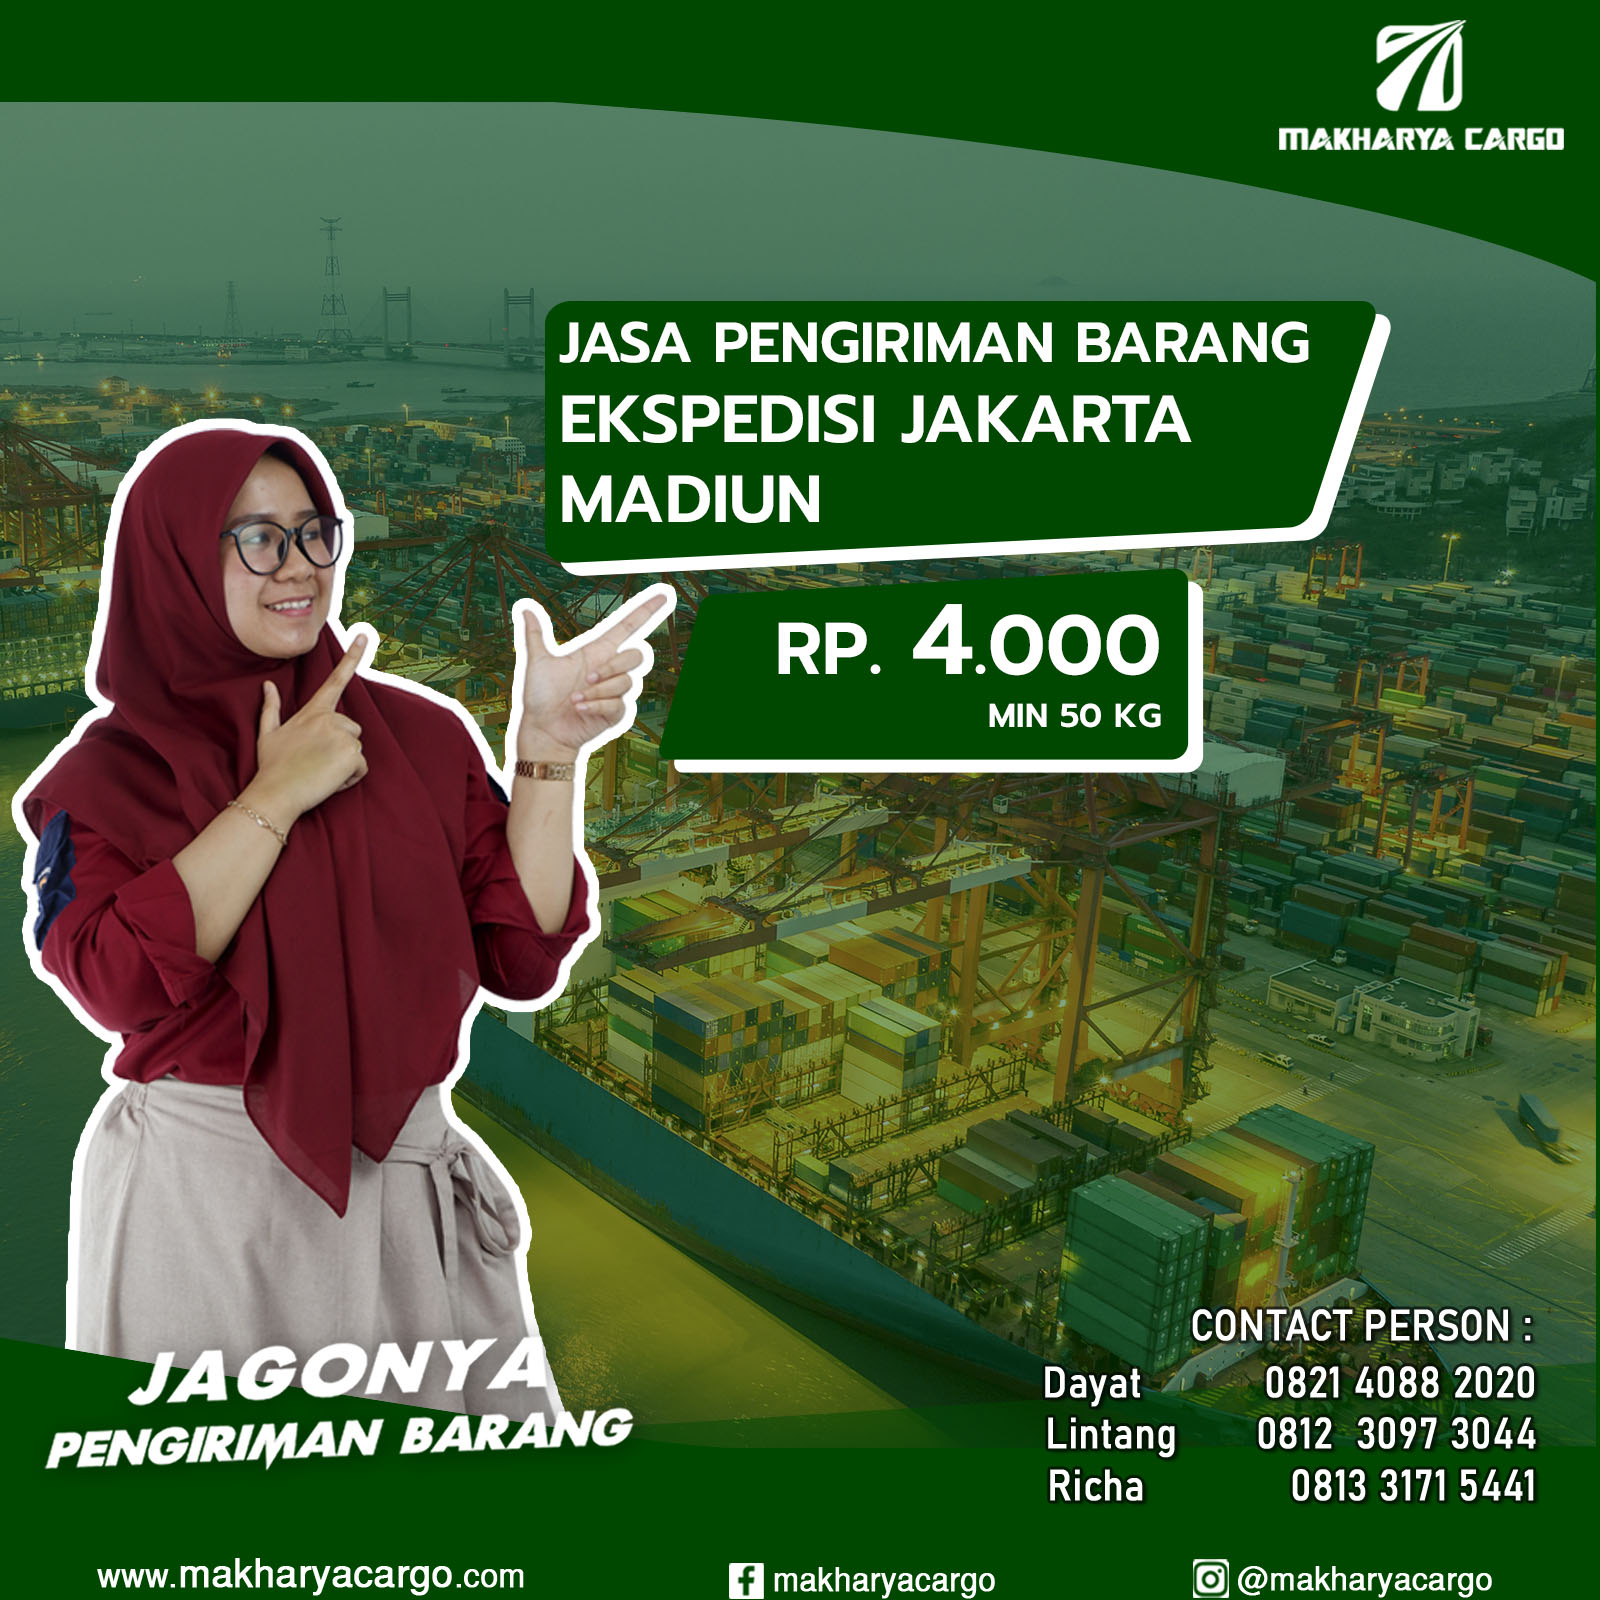 Ekspedisi Jakarta Madiun